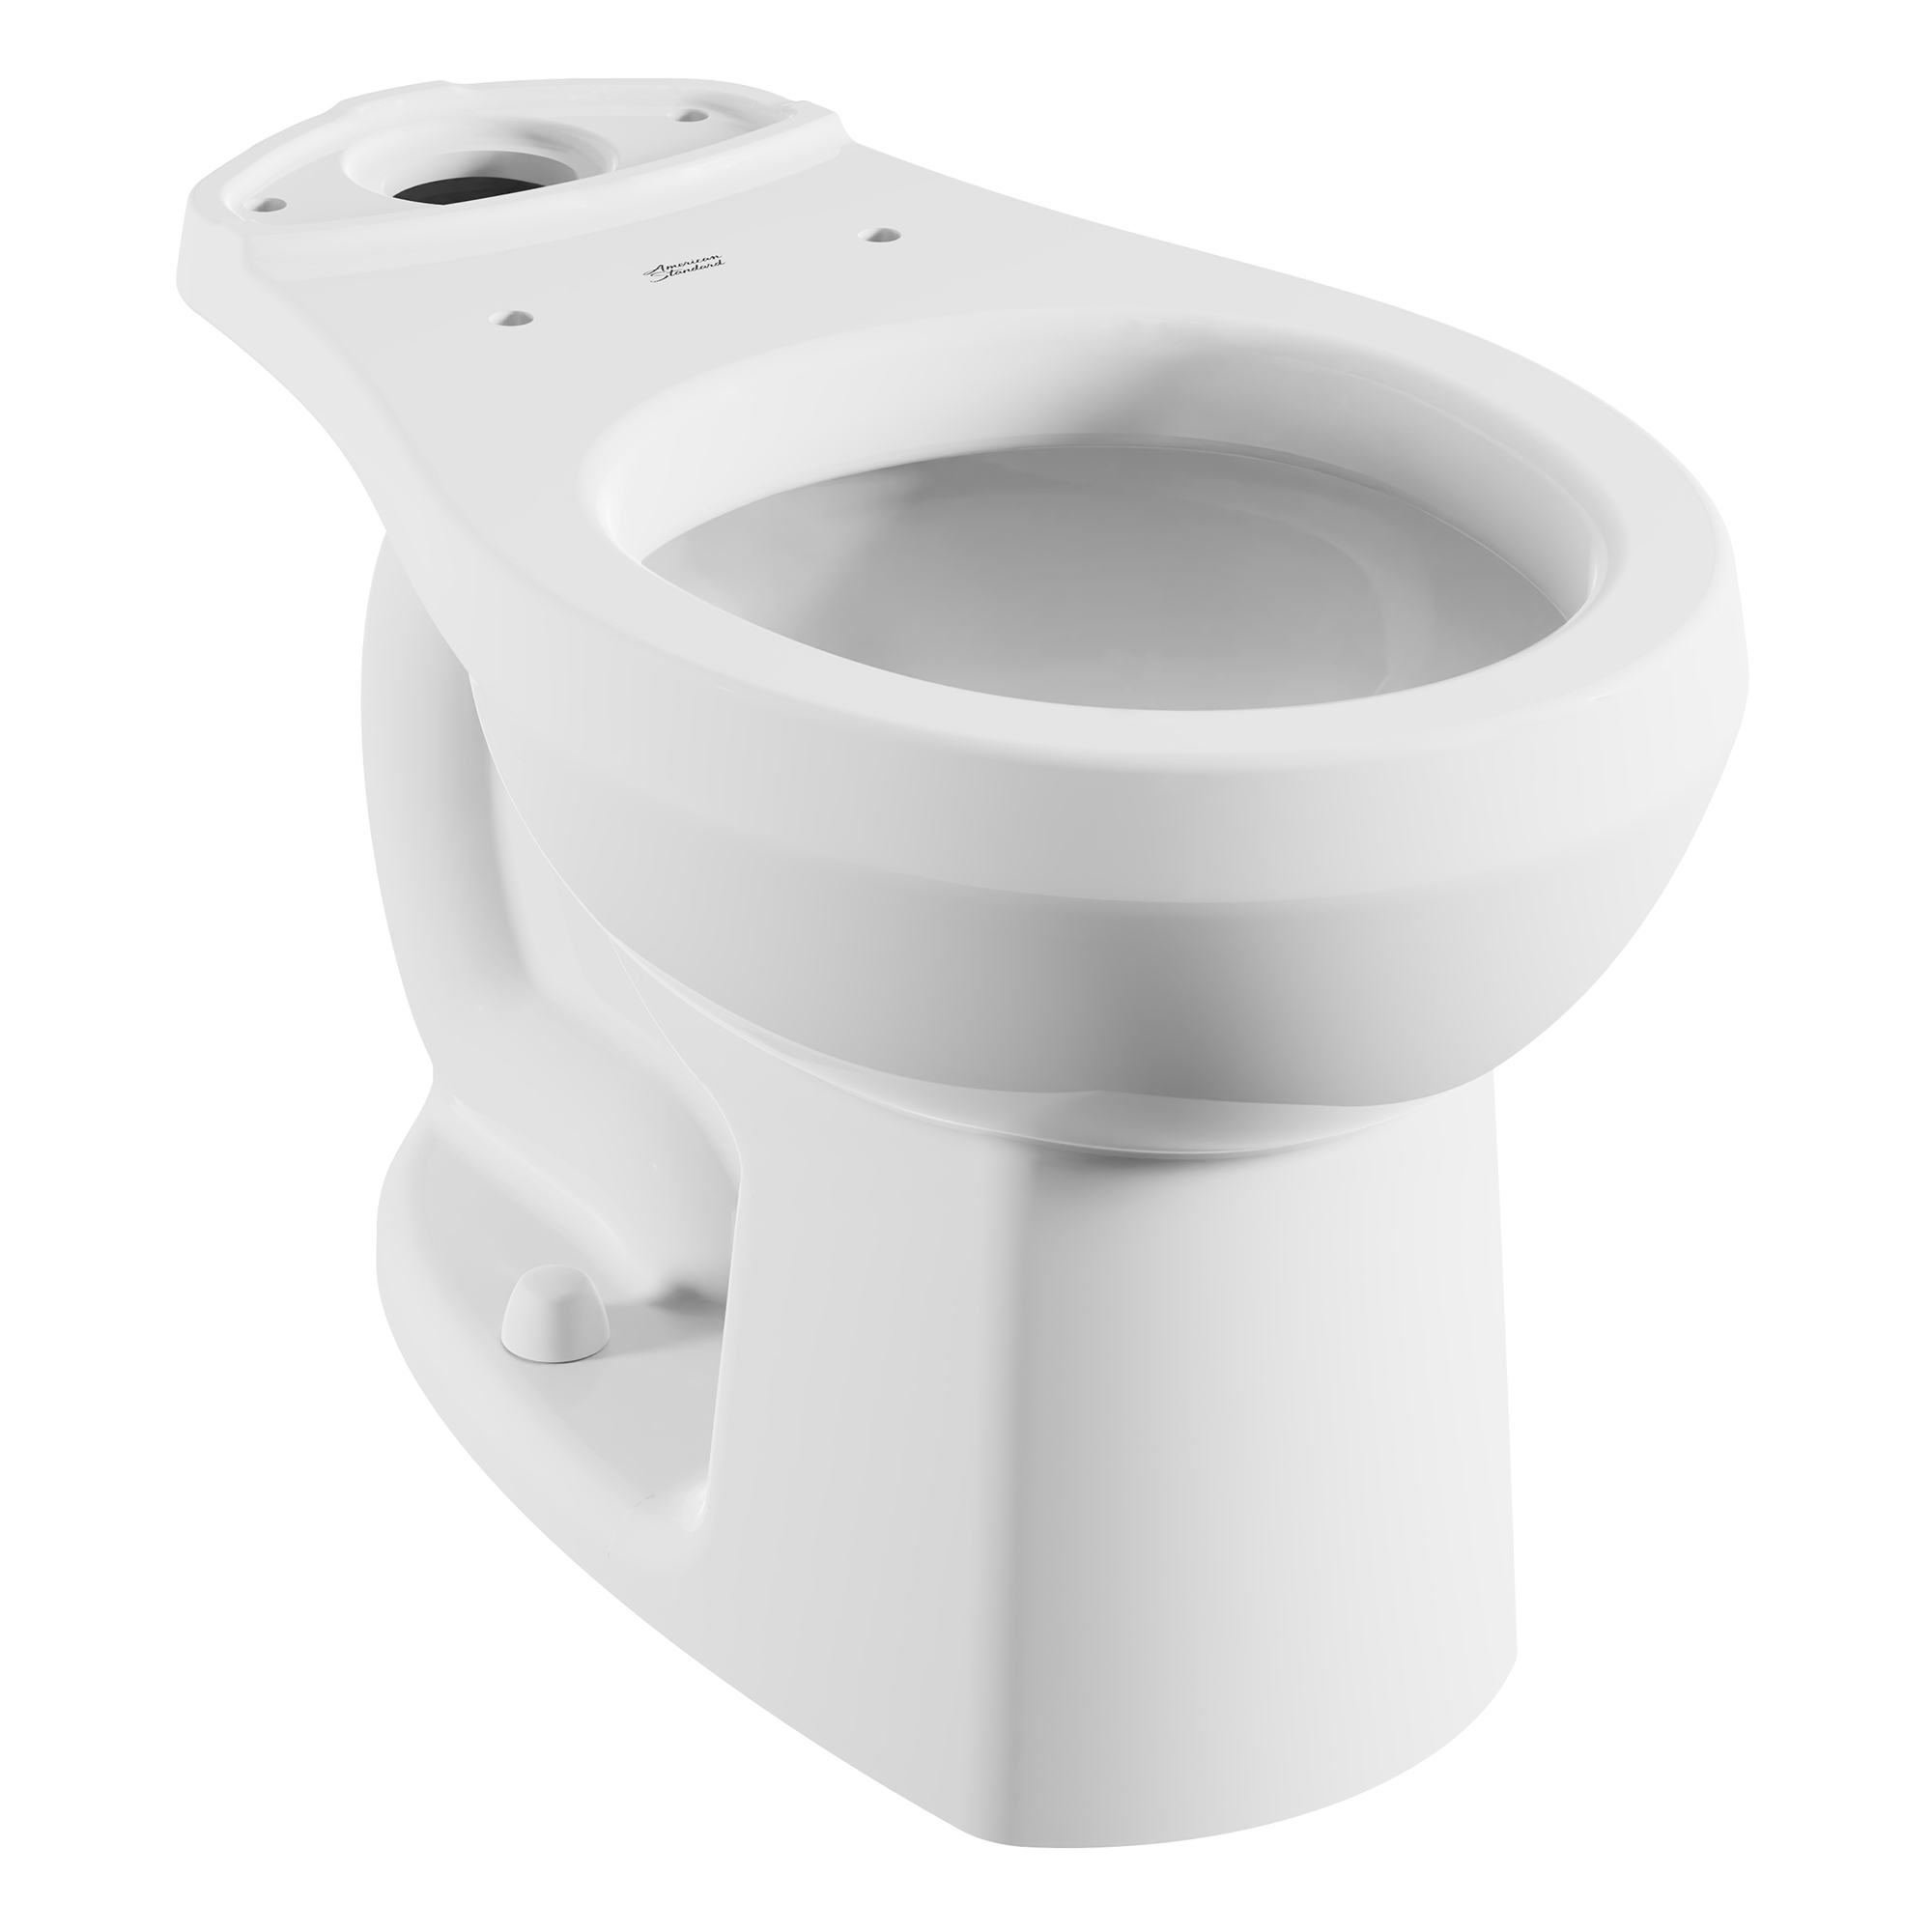 Toilette Evolution 2, à cuvette au devant rond à hauteur régulière, sans siège